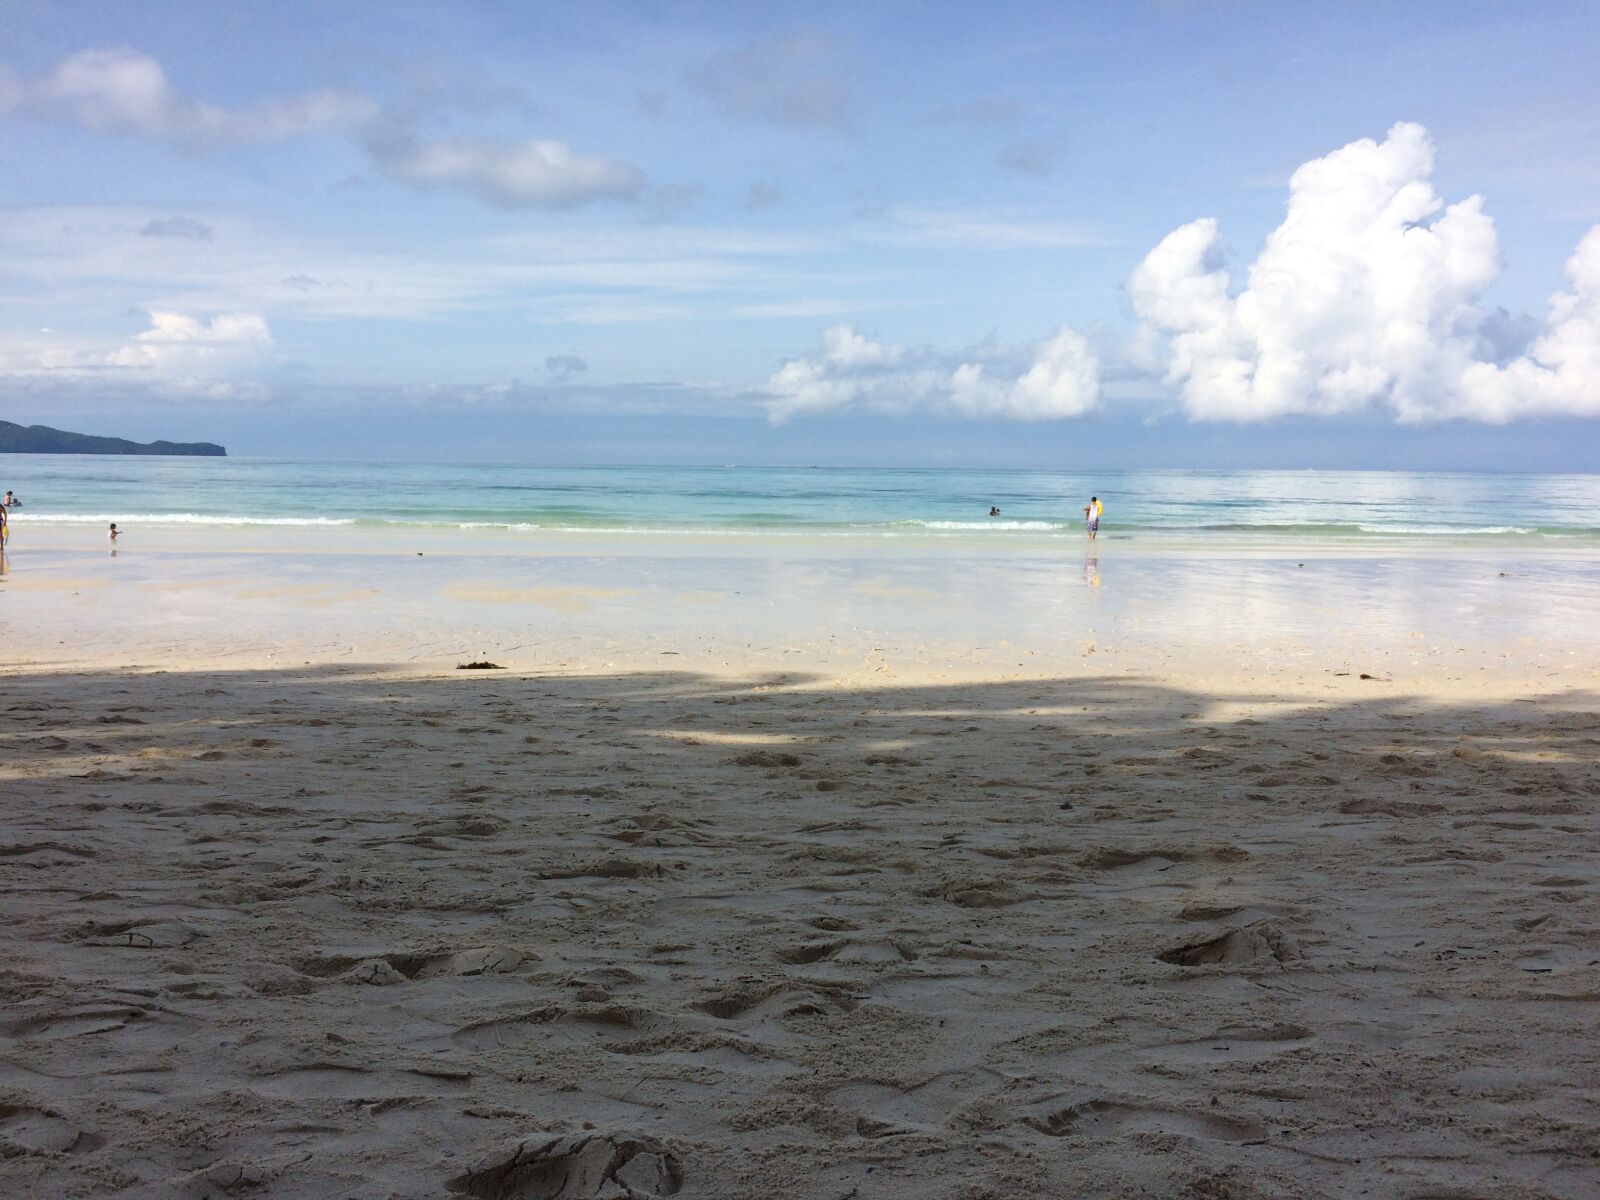 Apple iPhone 5s sample photo. Boracay, ocean, beach photography